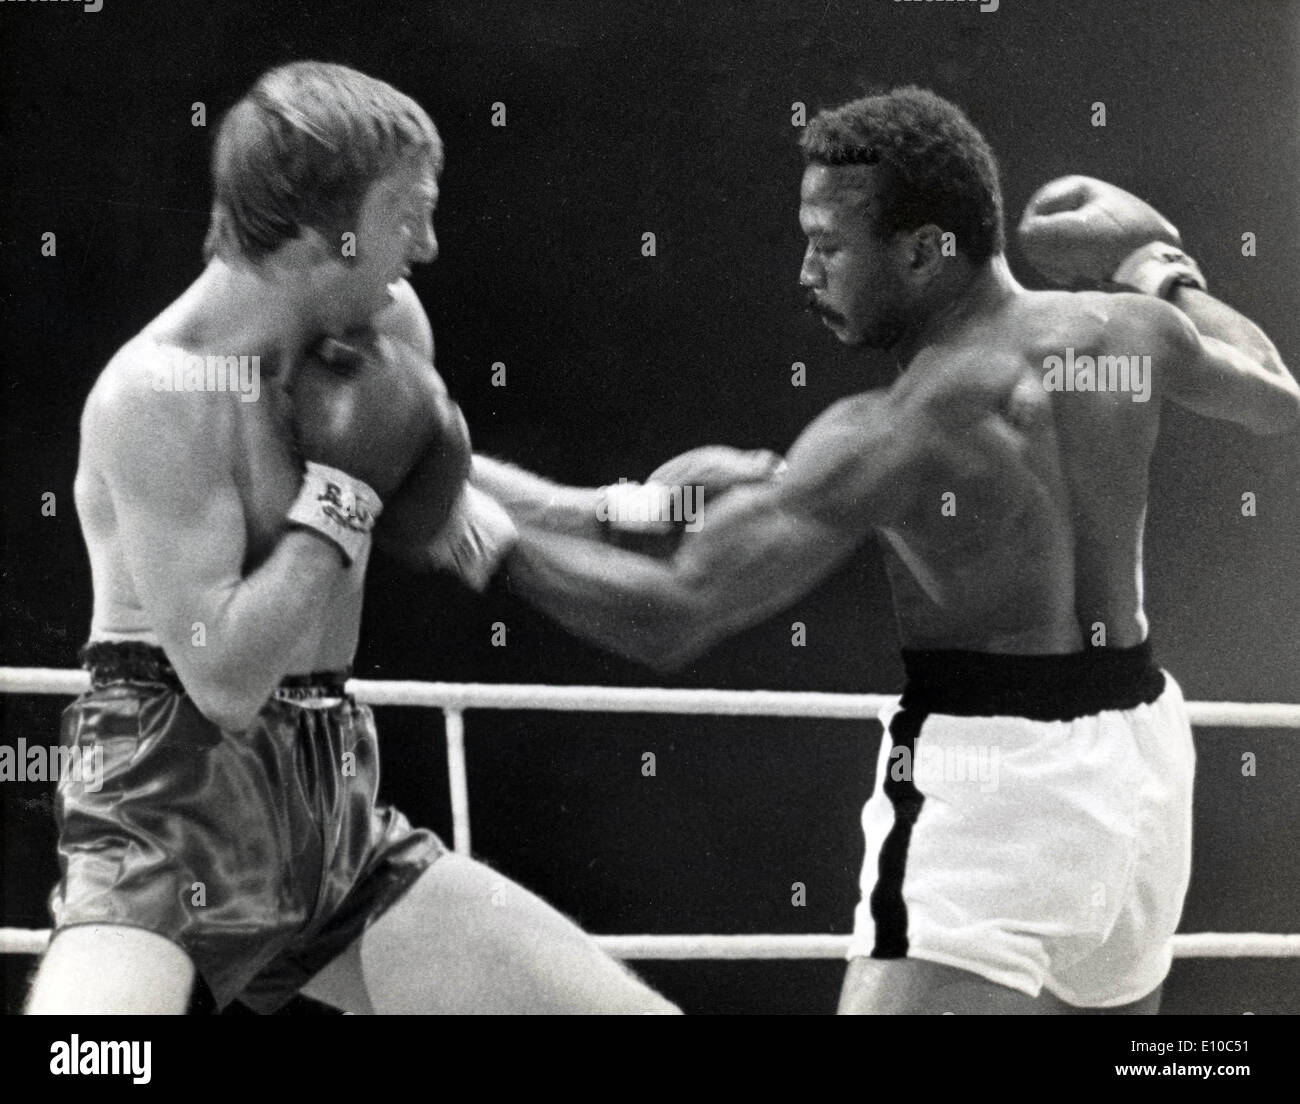 Le champion de boxe Poids welter JOSE NAPOLES luttant contre la contender RALPH CHARLES durant leur titre lutte ,Wembley. Banque D'Images